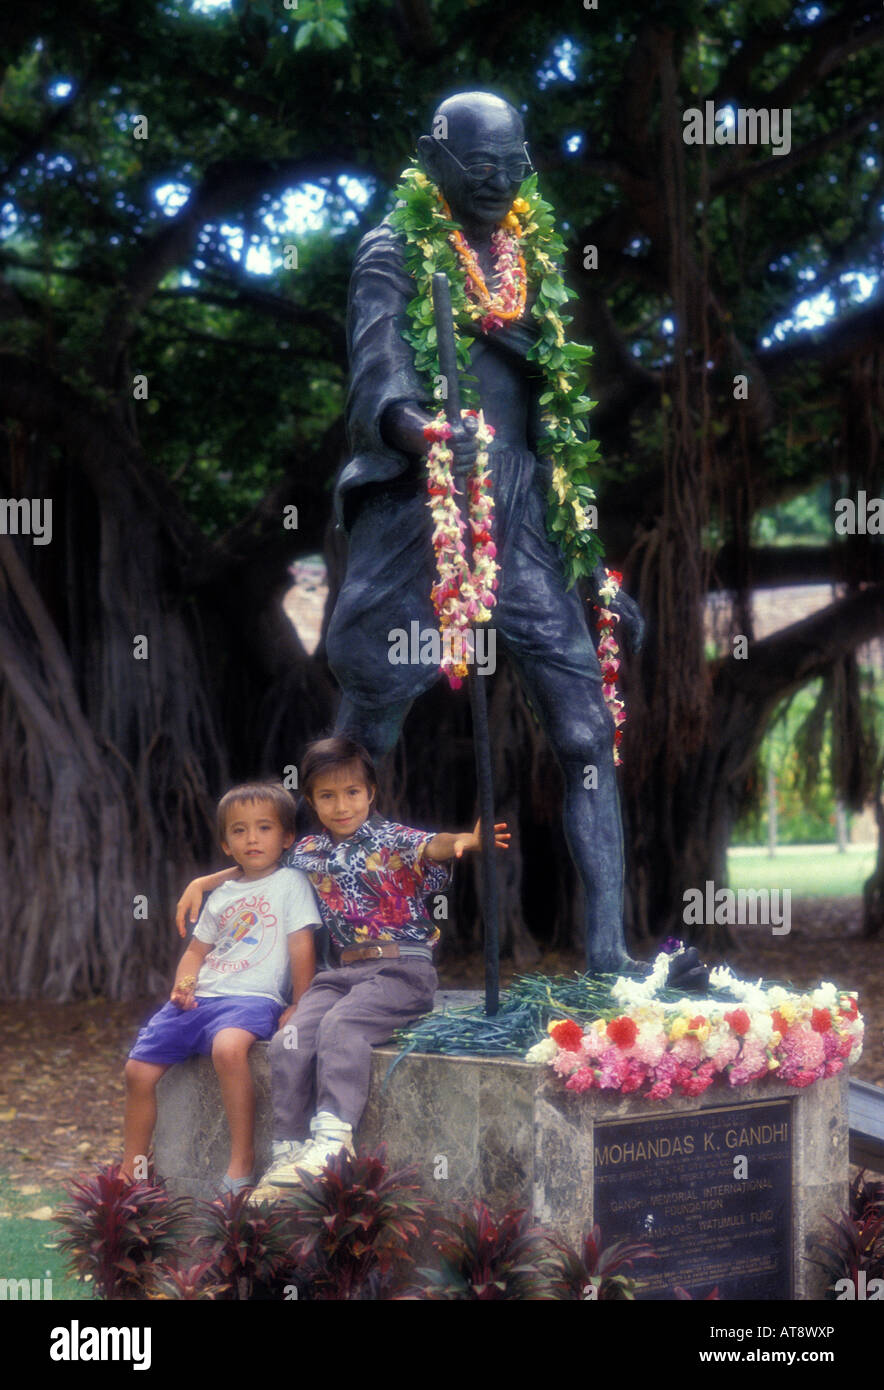 Les enfants avec la statue de Mohandas Gandhi à Waikiki, situé à proximité du zoo d'Honolulu. Banque D'Images